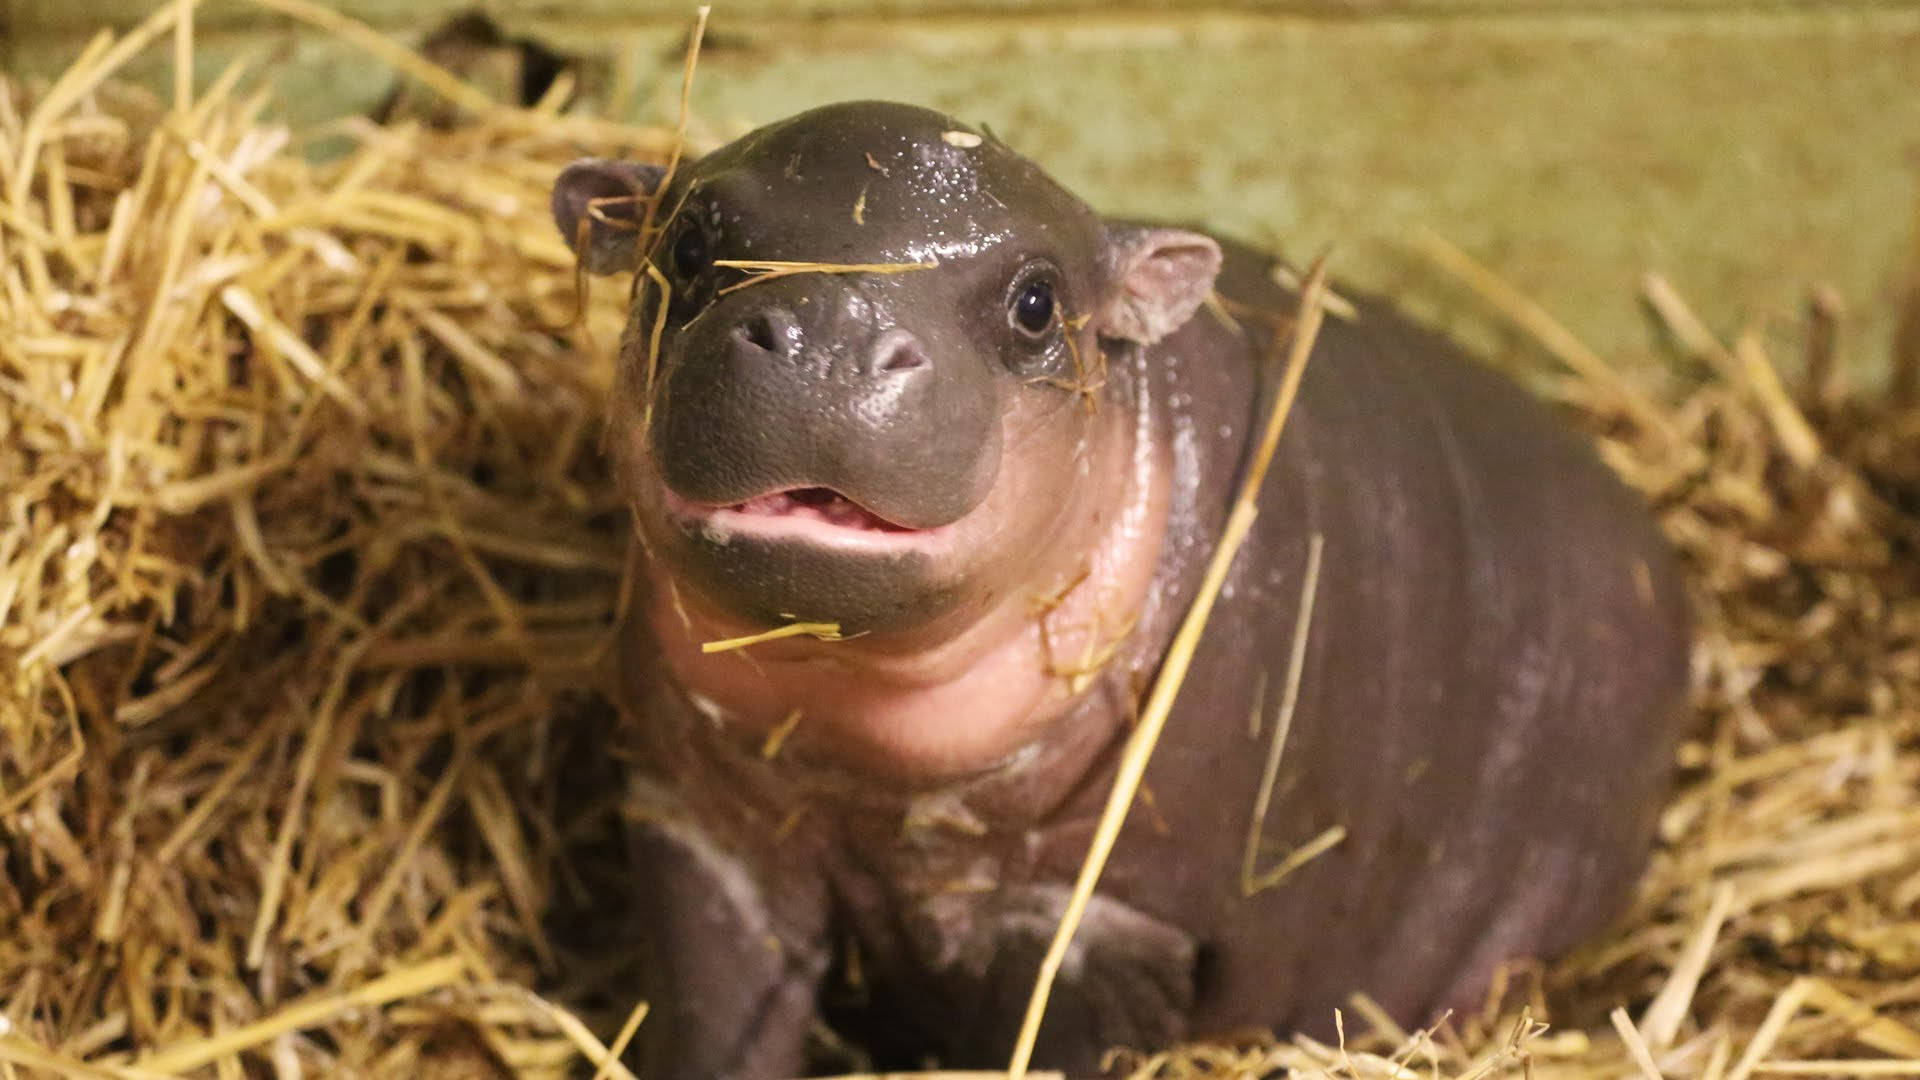 Shiny Skin Of Baby Hippopotamus